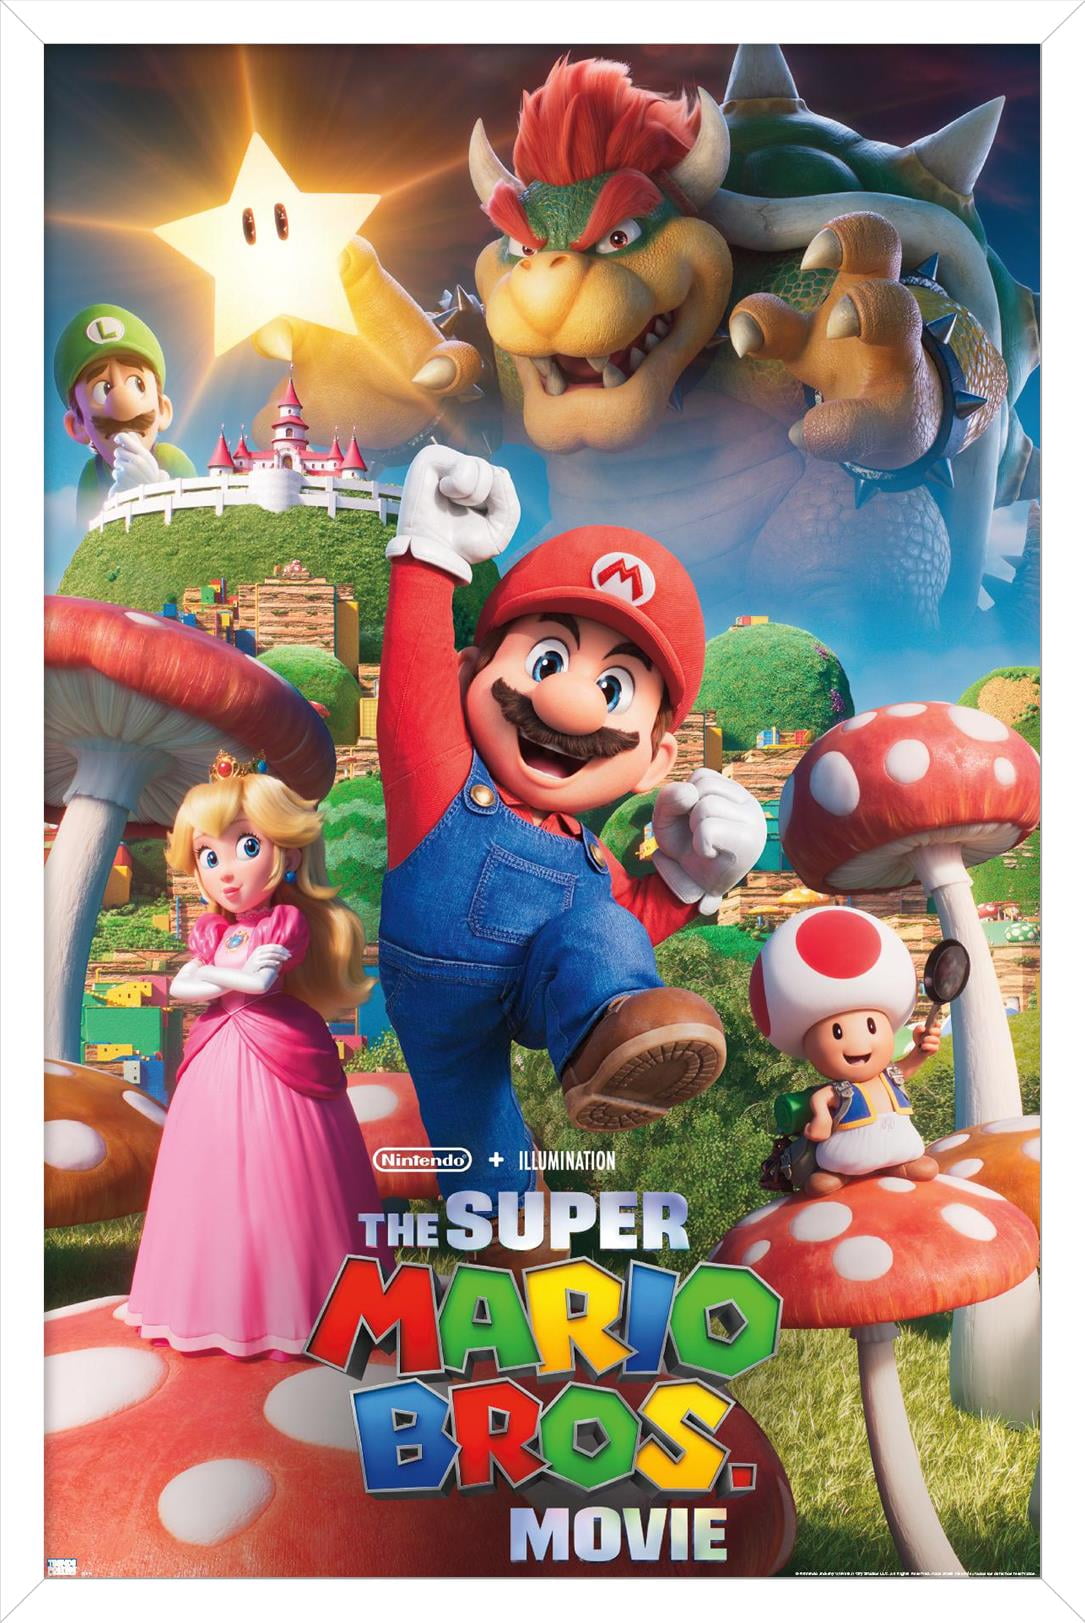 The Super Mario Bros. Movie - Mushroom Kingdom Key Art Wall Poster, 22.375  x 34 